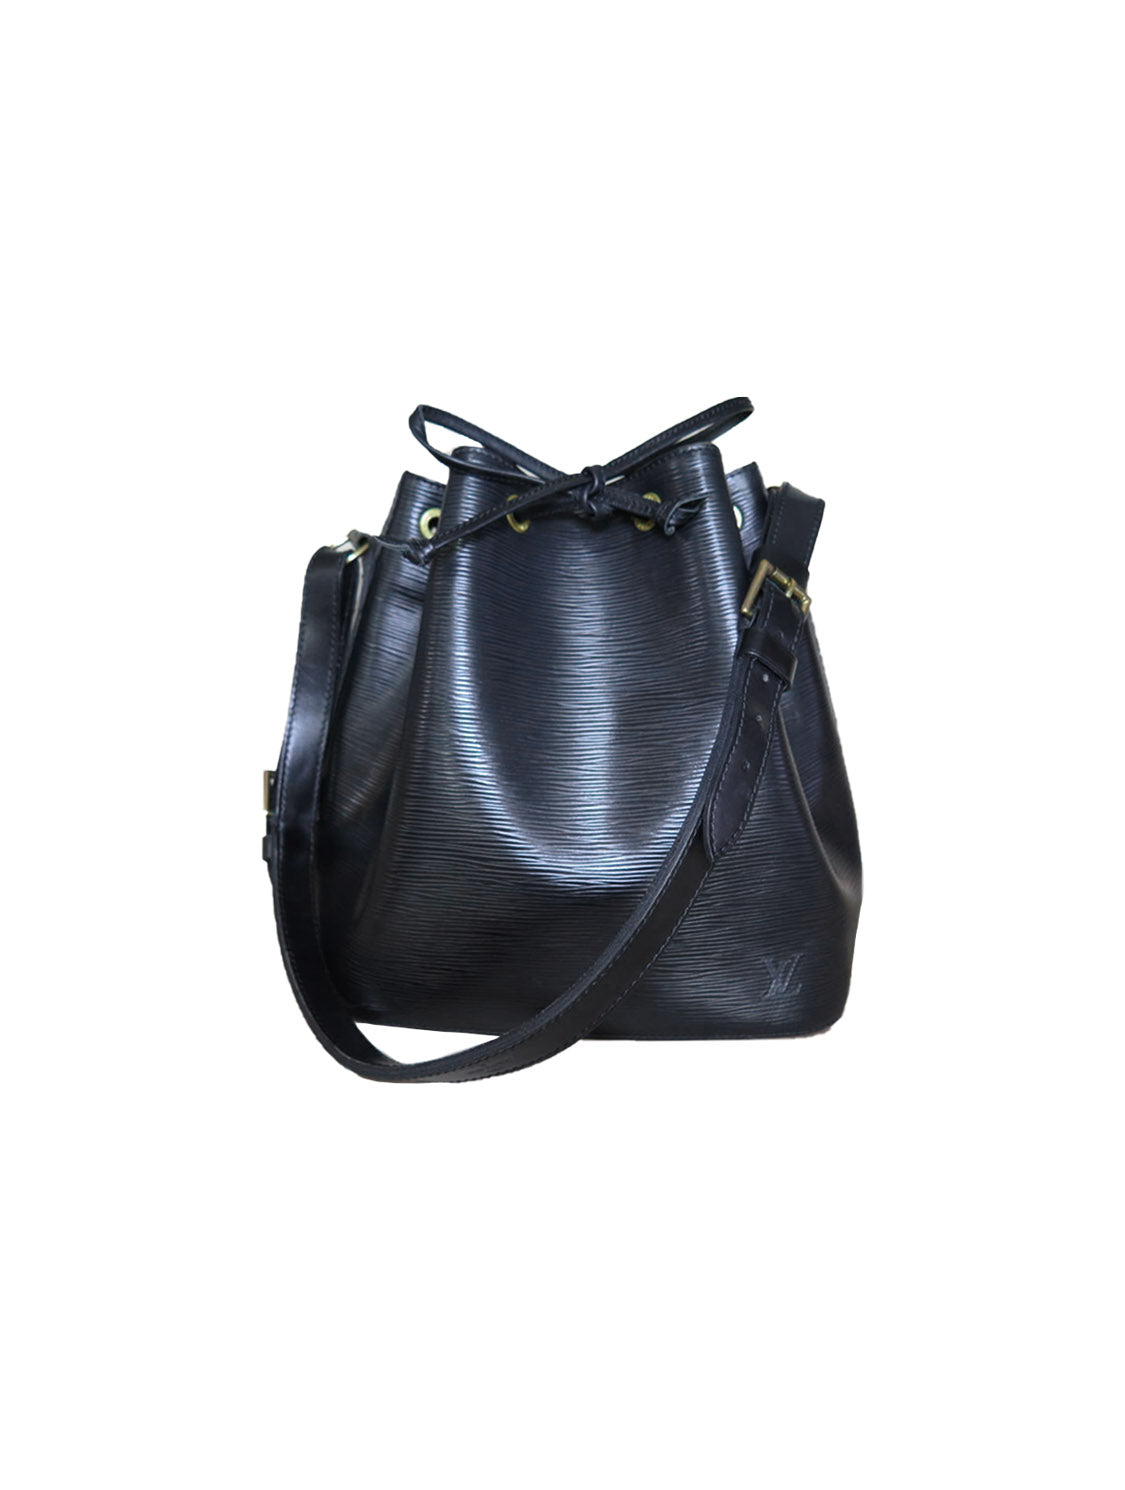 Néonoé bb leather handbag Louis Vuitton Black in Leather - 36403252